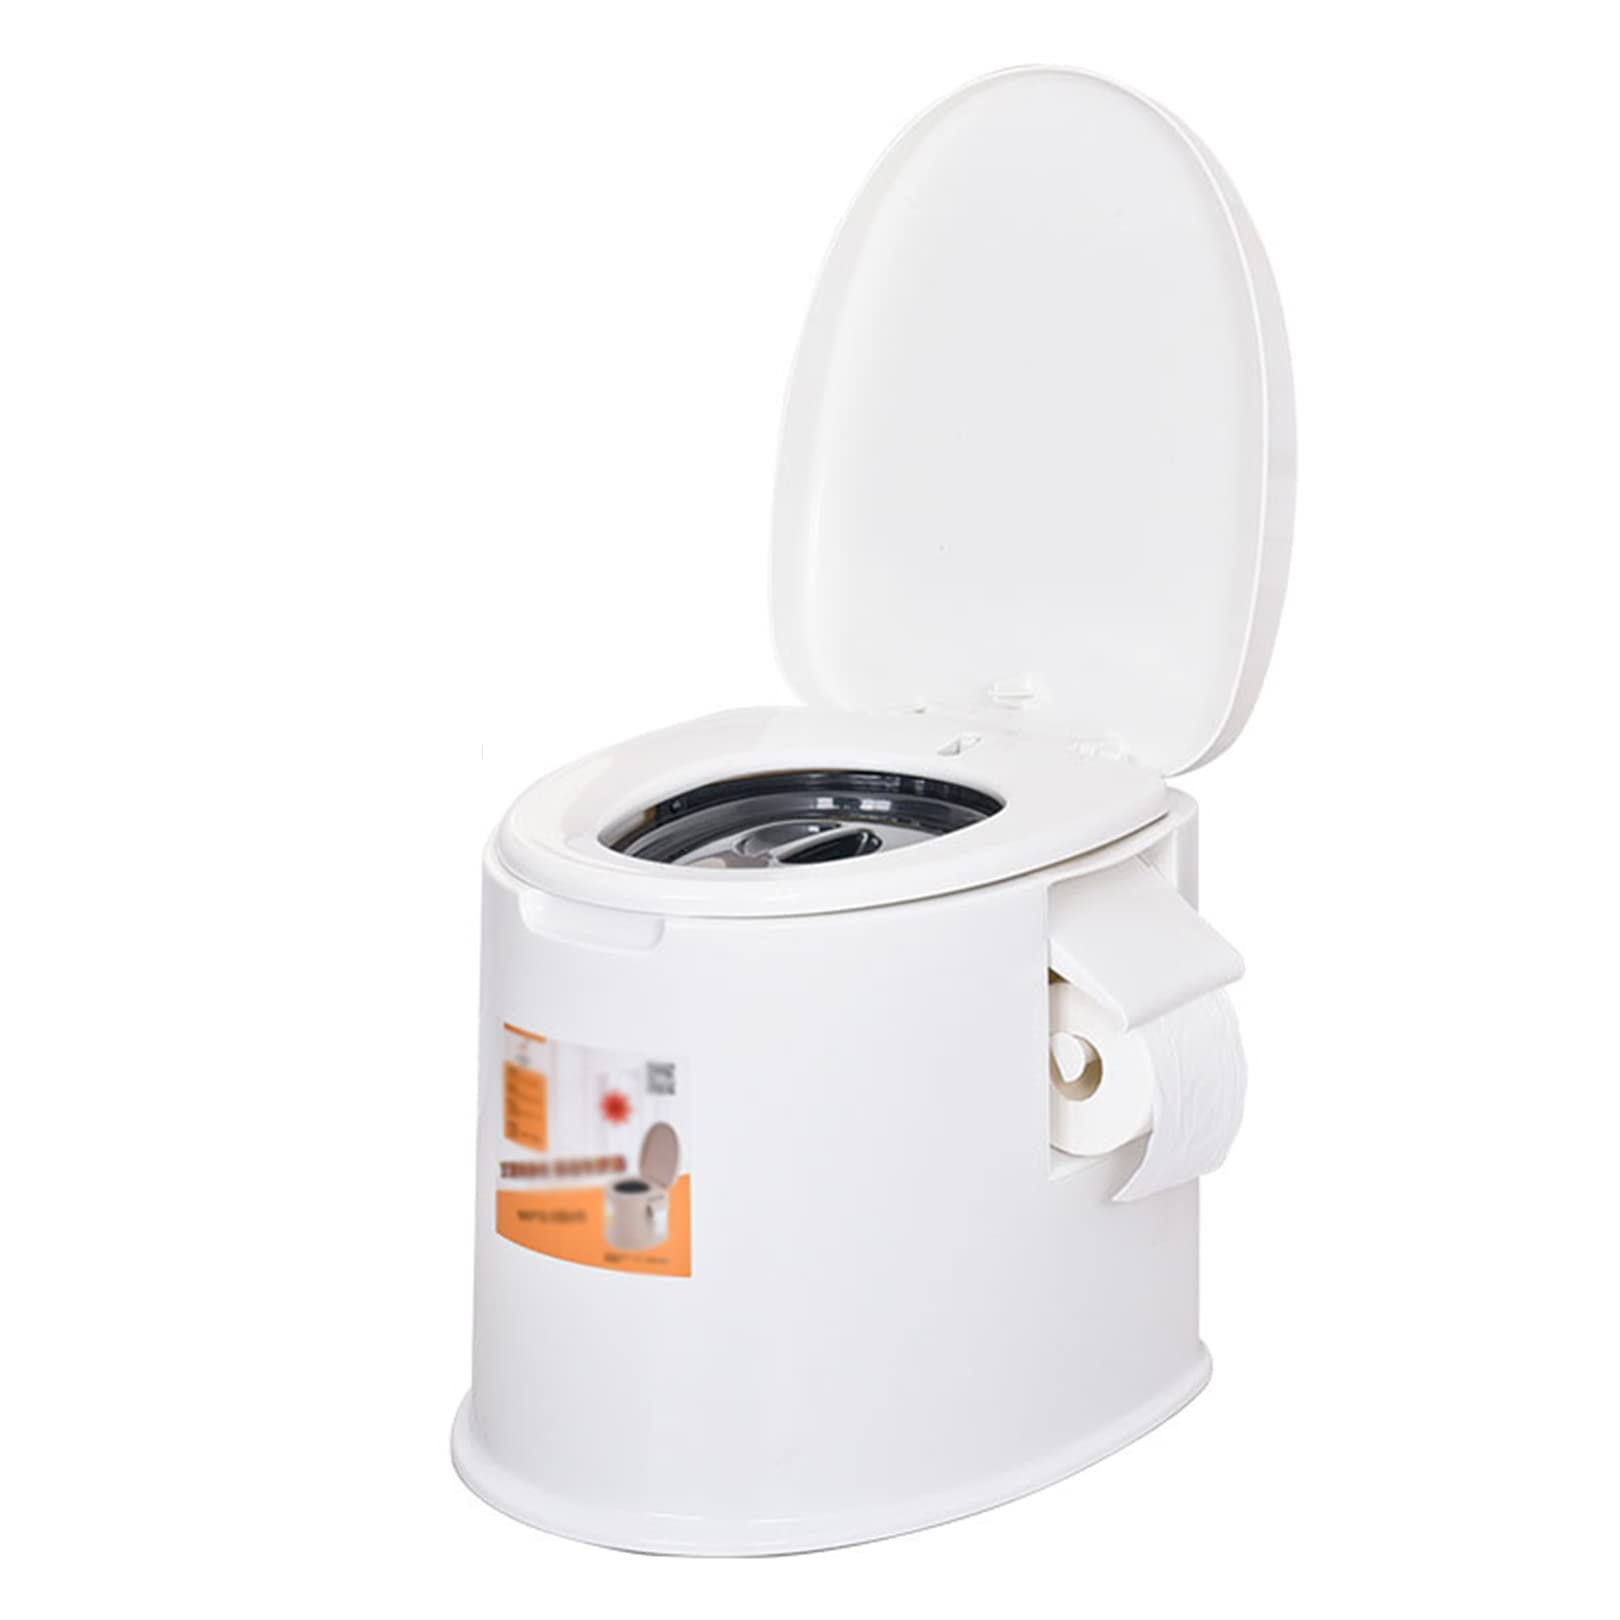 Tragbare Toilette | Kommode für den Innen- und Außenbereich mit abnehmbarem Inneneimer und abnehmbarem Papierhalter, leicht für Camping, Boot, Van, Notfall